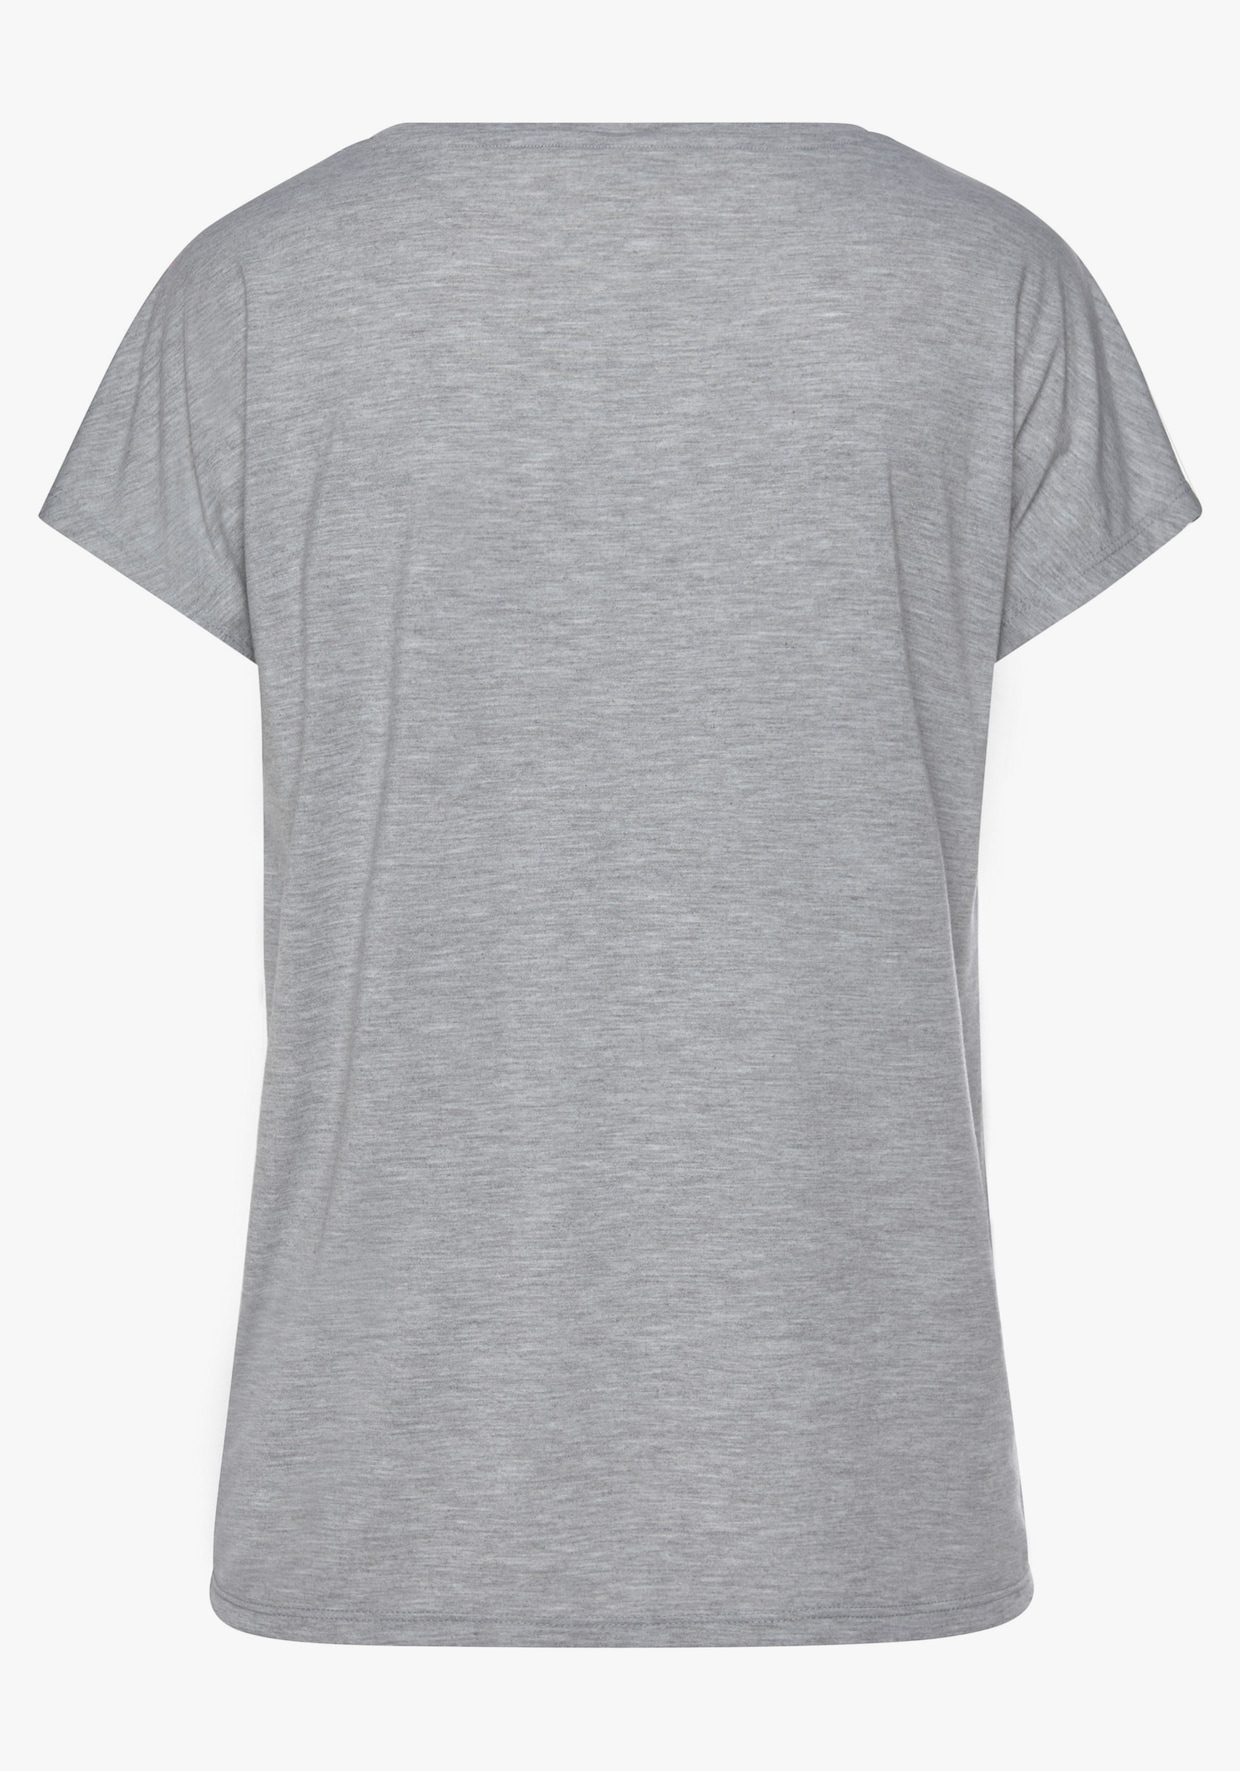 Vivance T-Shirt - grau meliert